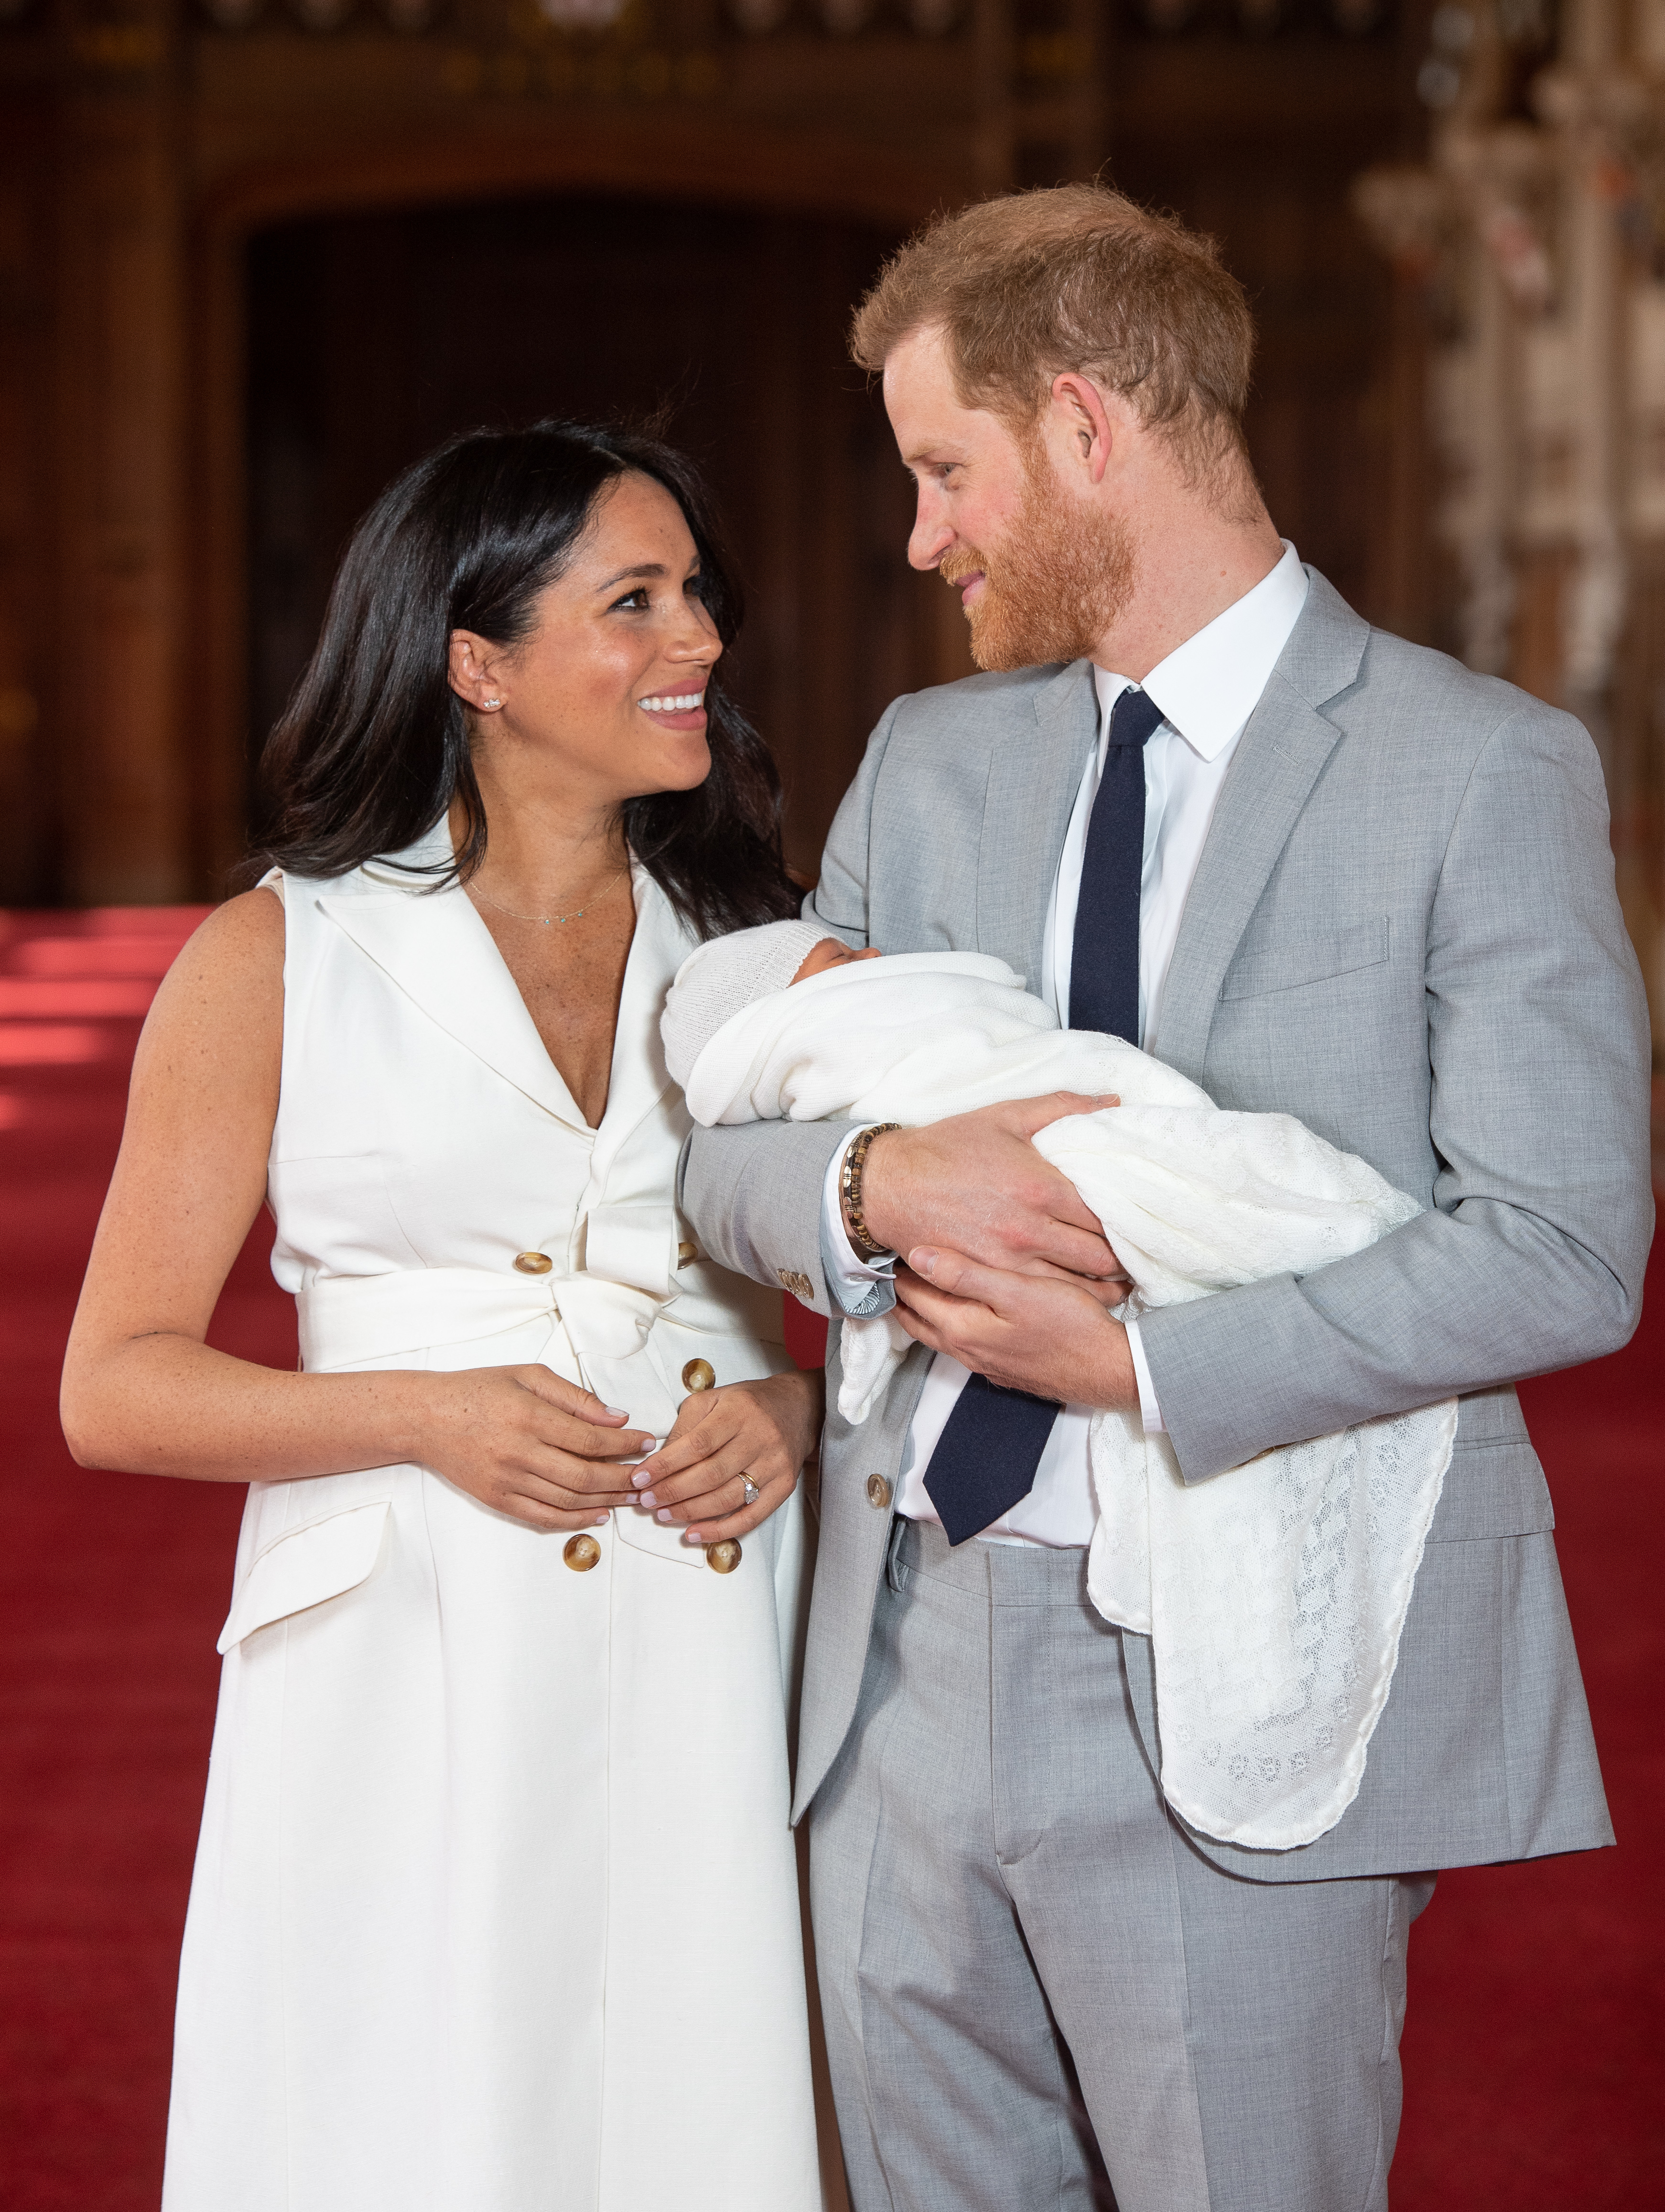 Prinz Harry und Meghan posieren mit ihrem neugeborenen Sohn Archie Harrison Mountbatten-Windsor am 8. Mai 2019 in Windsor, England. | Quelle: Getty Images